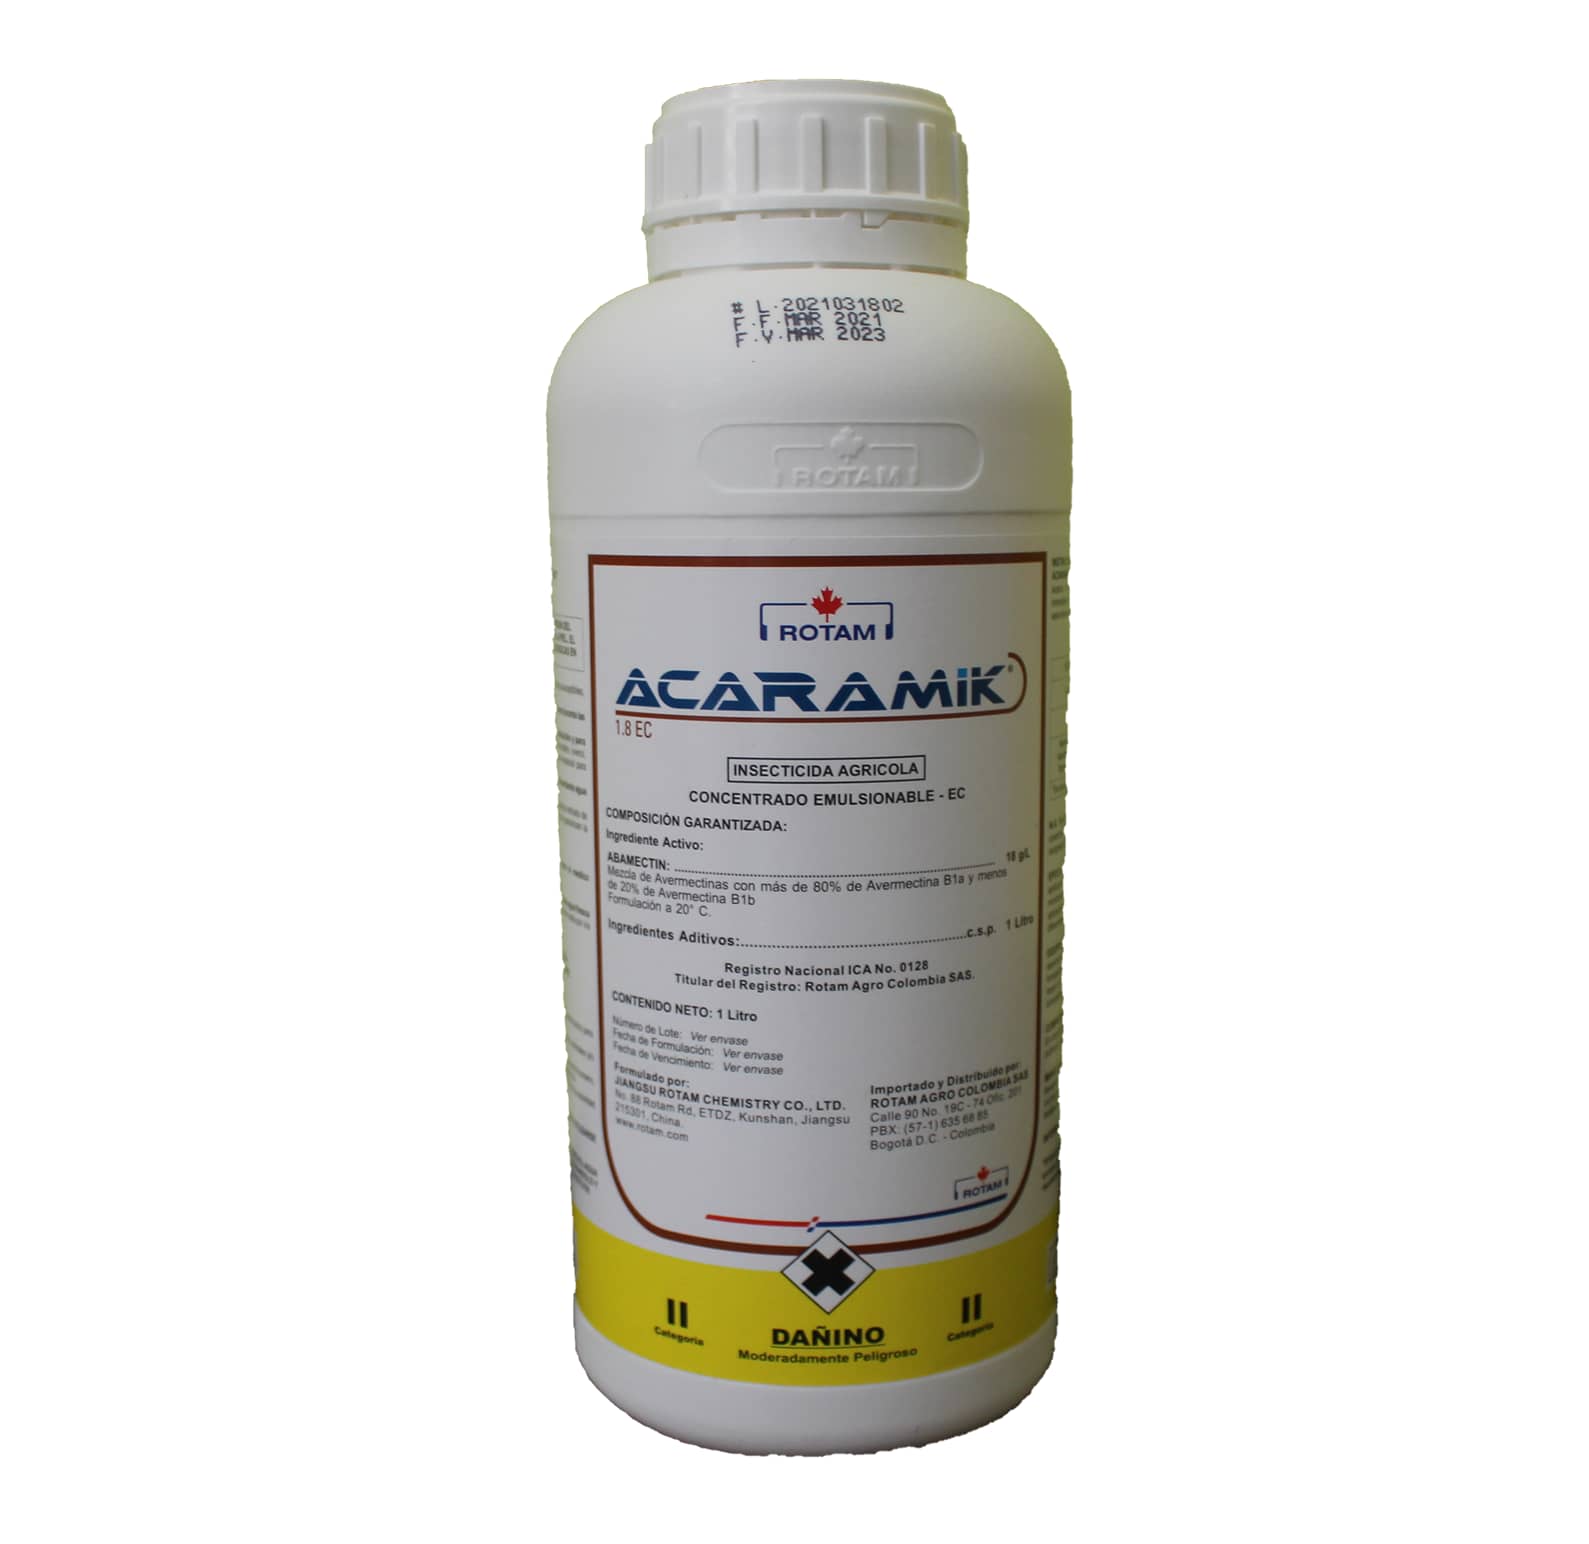 Insecticida Acaramik 1.8 EC x 1 Lt - Rotam